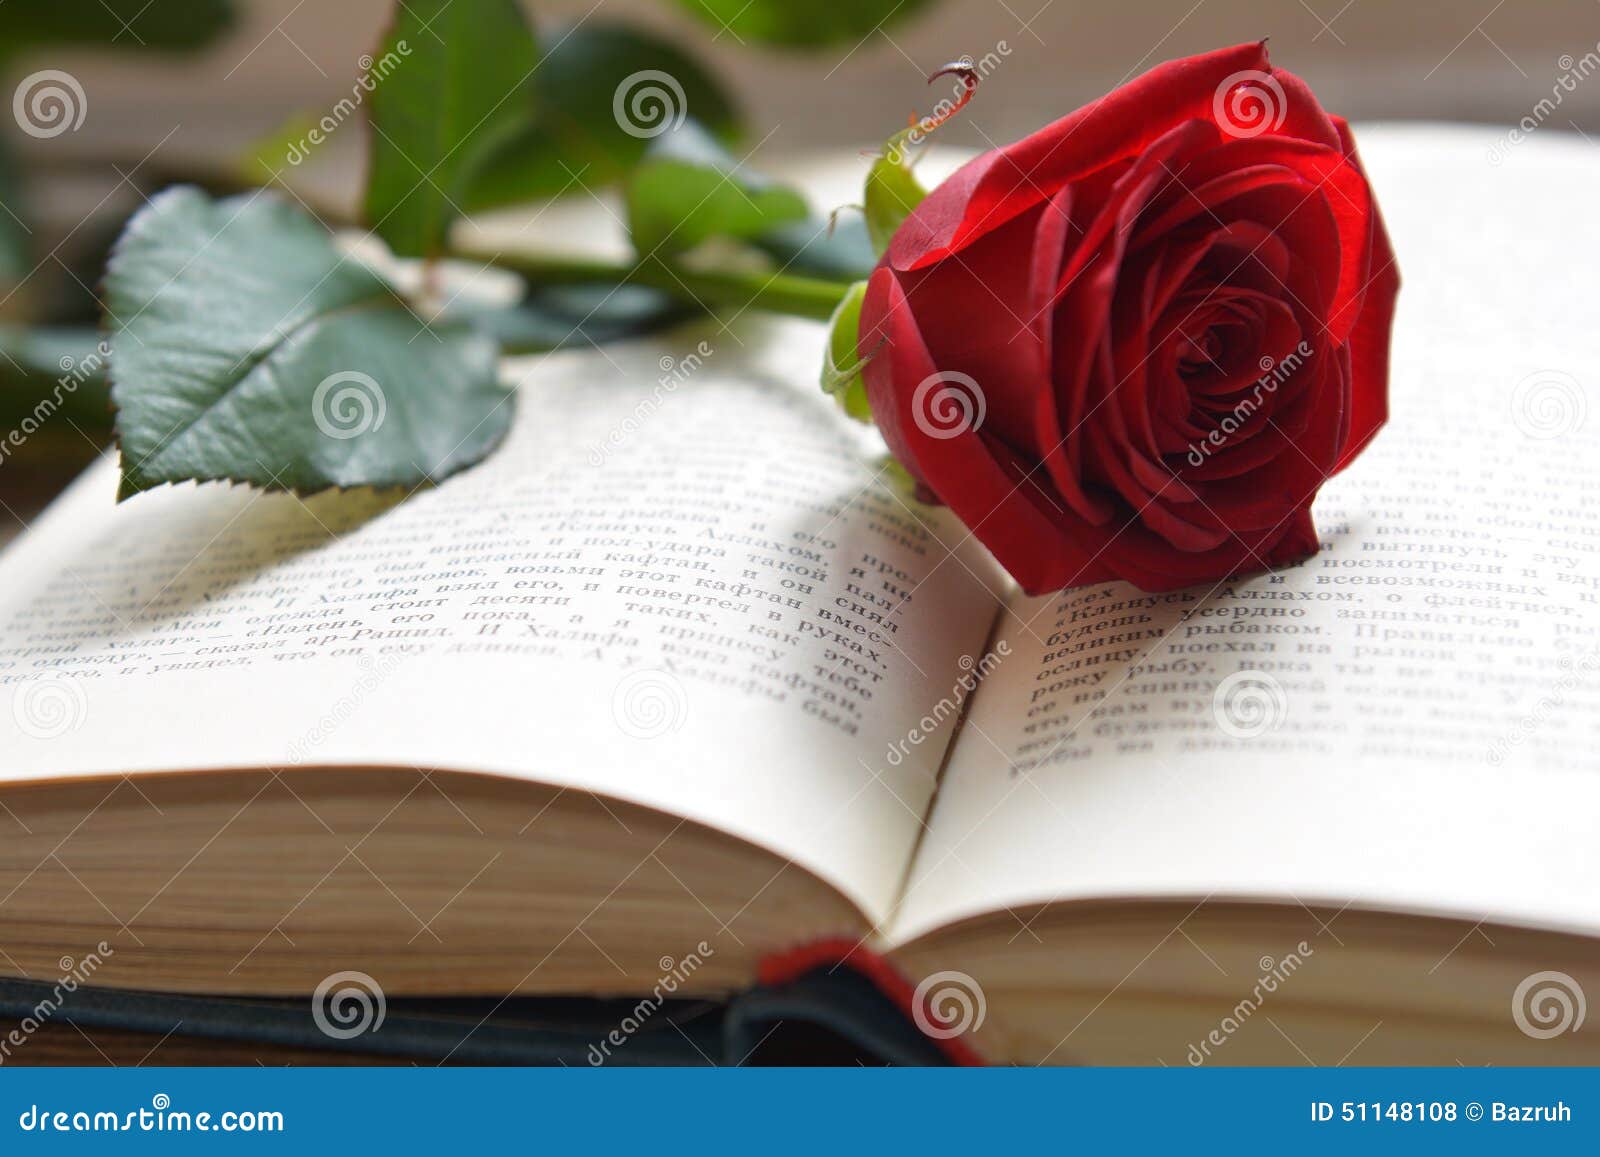 书上放一支玫瑰花图片,玫瑰花放在书上的图片 - 伤感说说吧